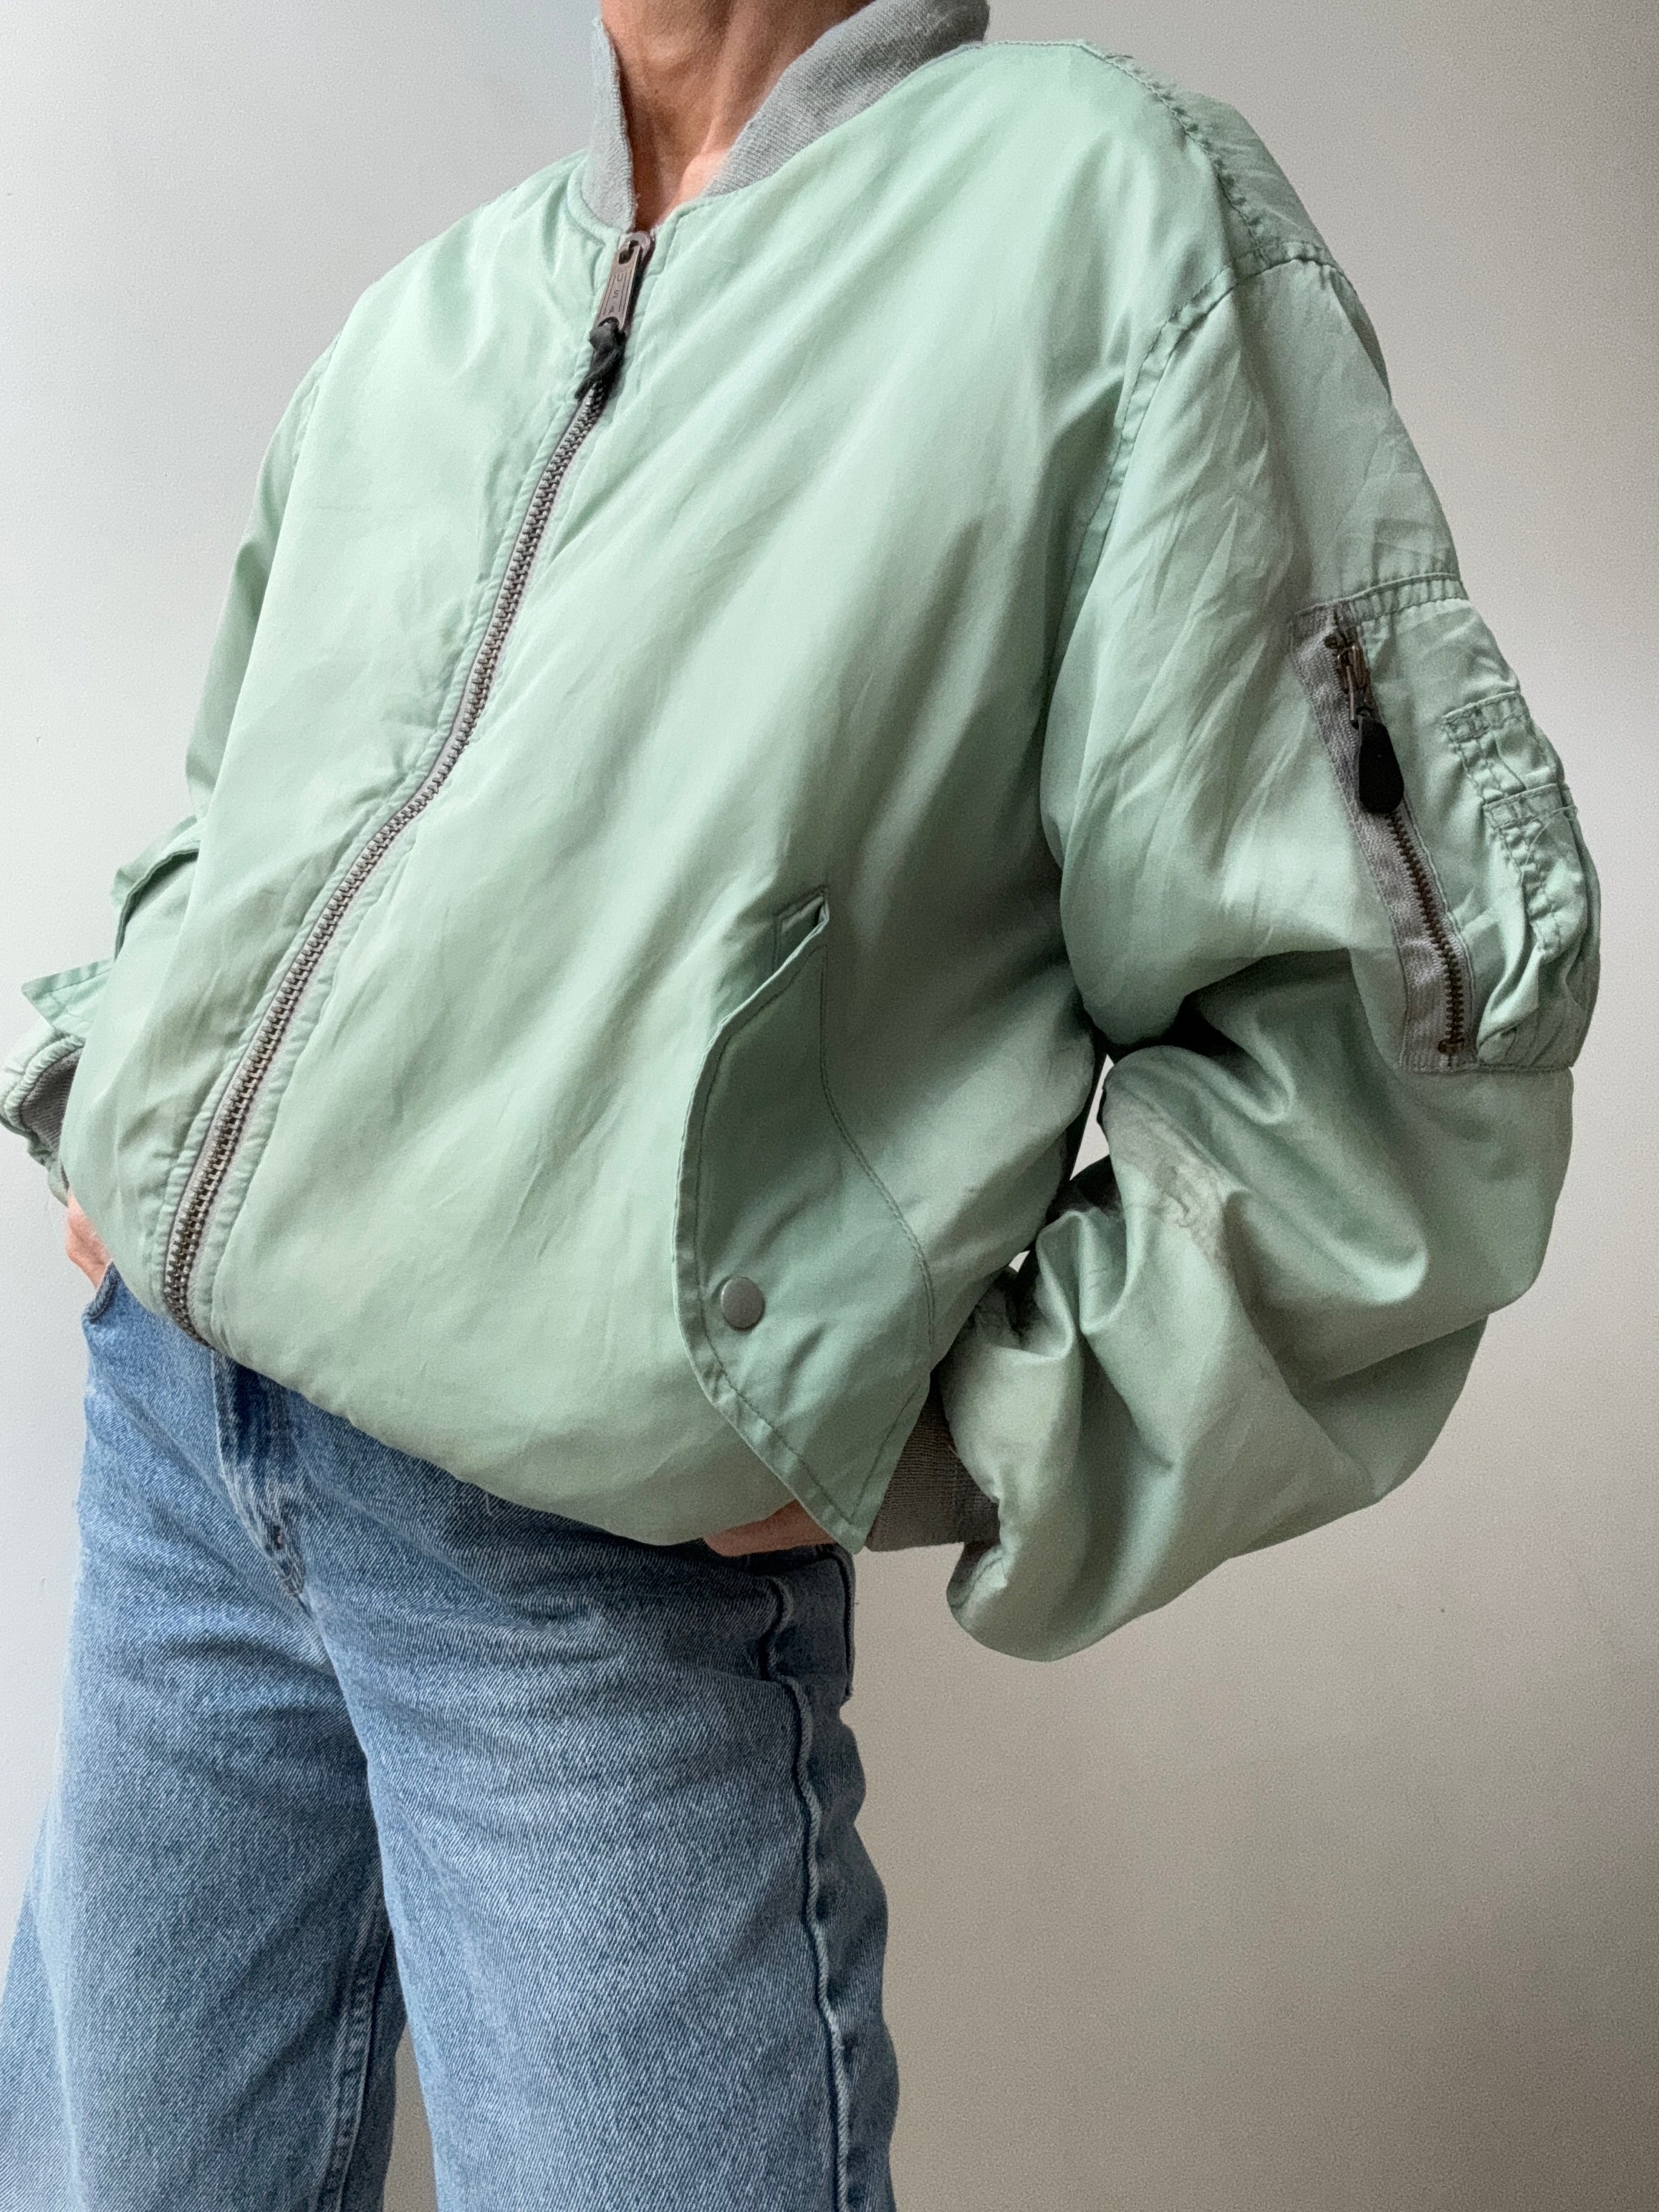 Future Nomads Jackets Large Vintage Bomber Pale Green Japan